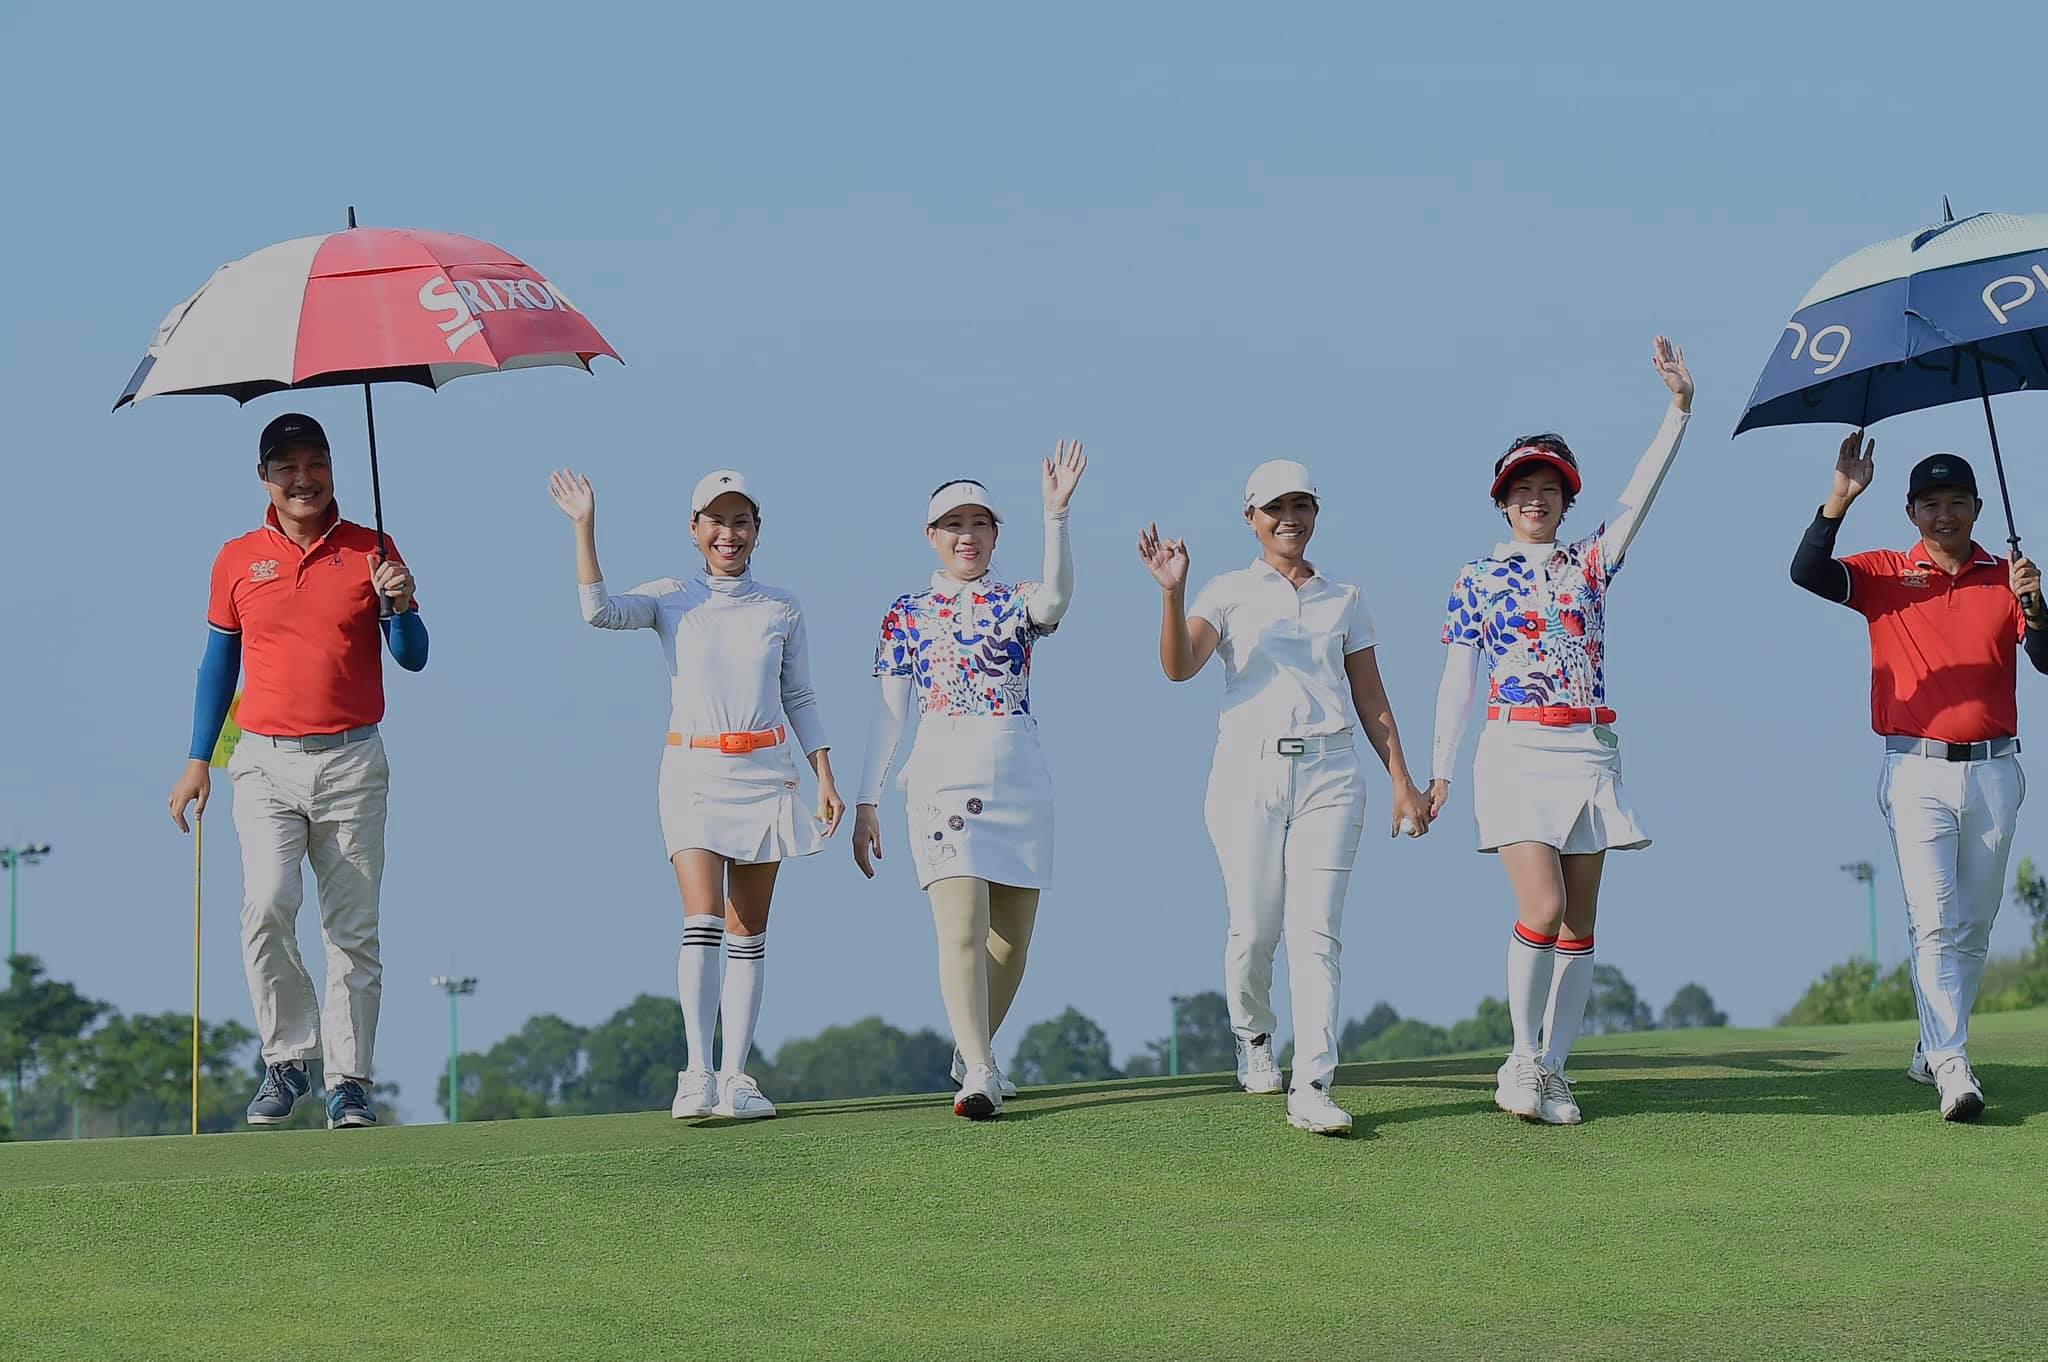 CLB Golf Ladies luôn ấn tượng với phong thái trẻ trung